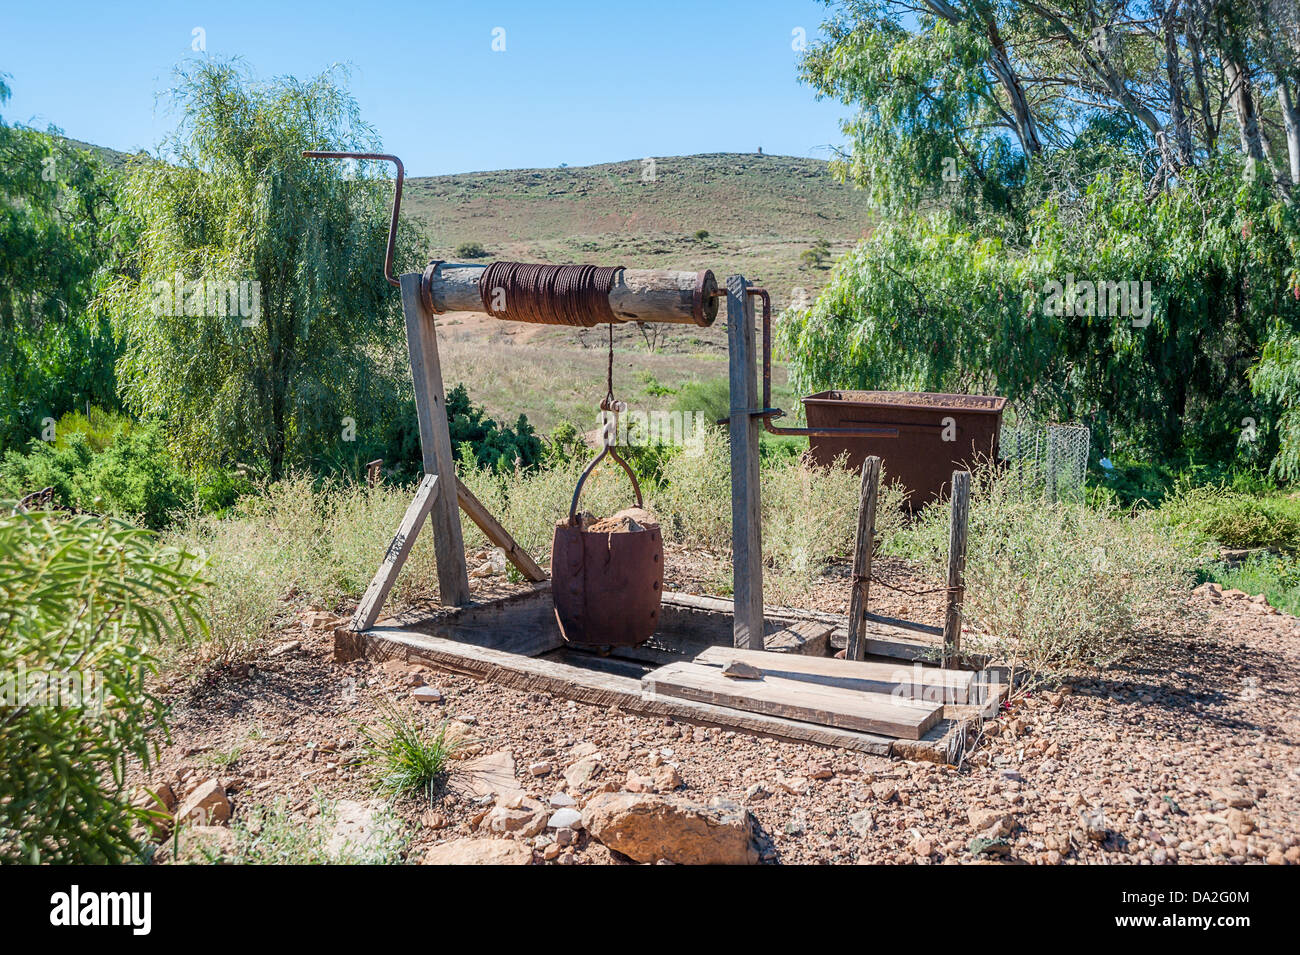 Un vieux puits de mine de la ville de Blinman près de la belle construction solide Flinders dans l'outback australien. Banque D'Images